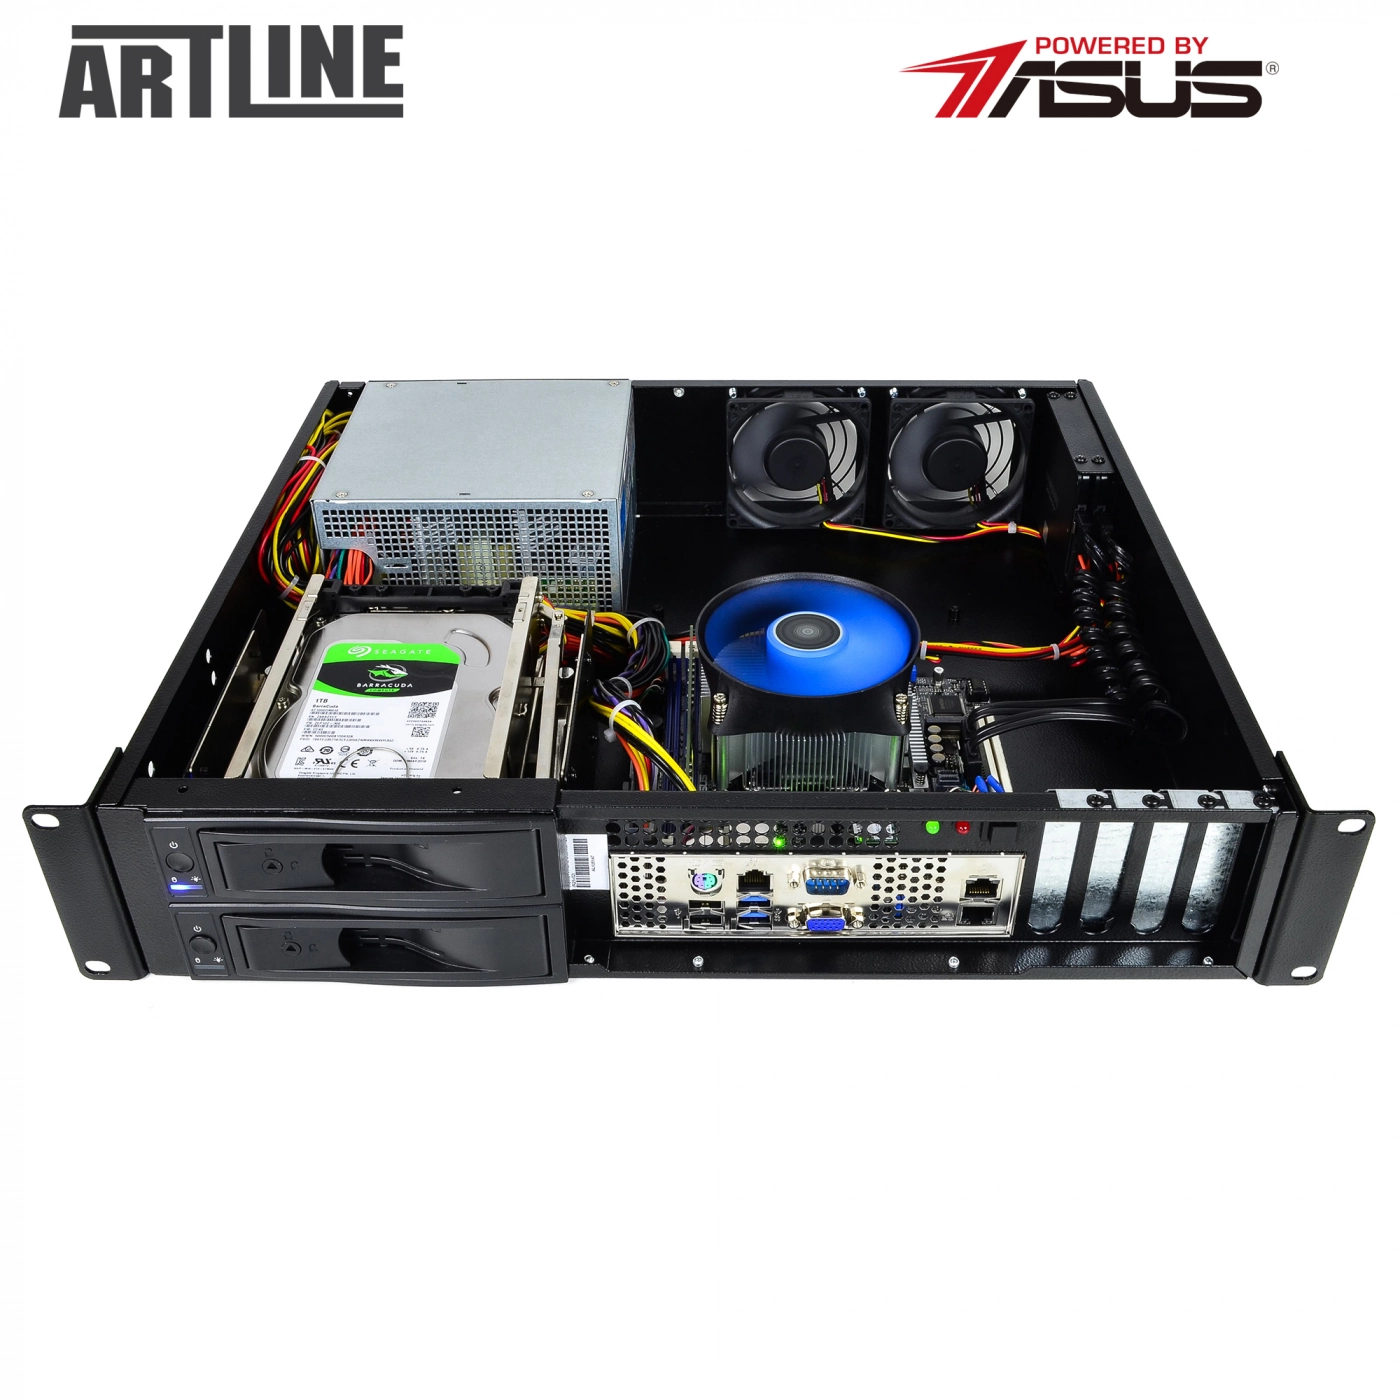 Купить Сервер ARTLINE Business R25v26 - фото 10